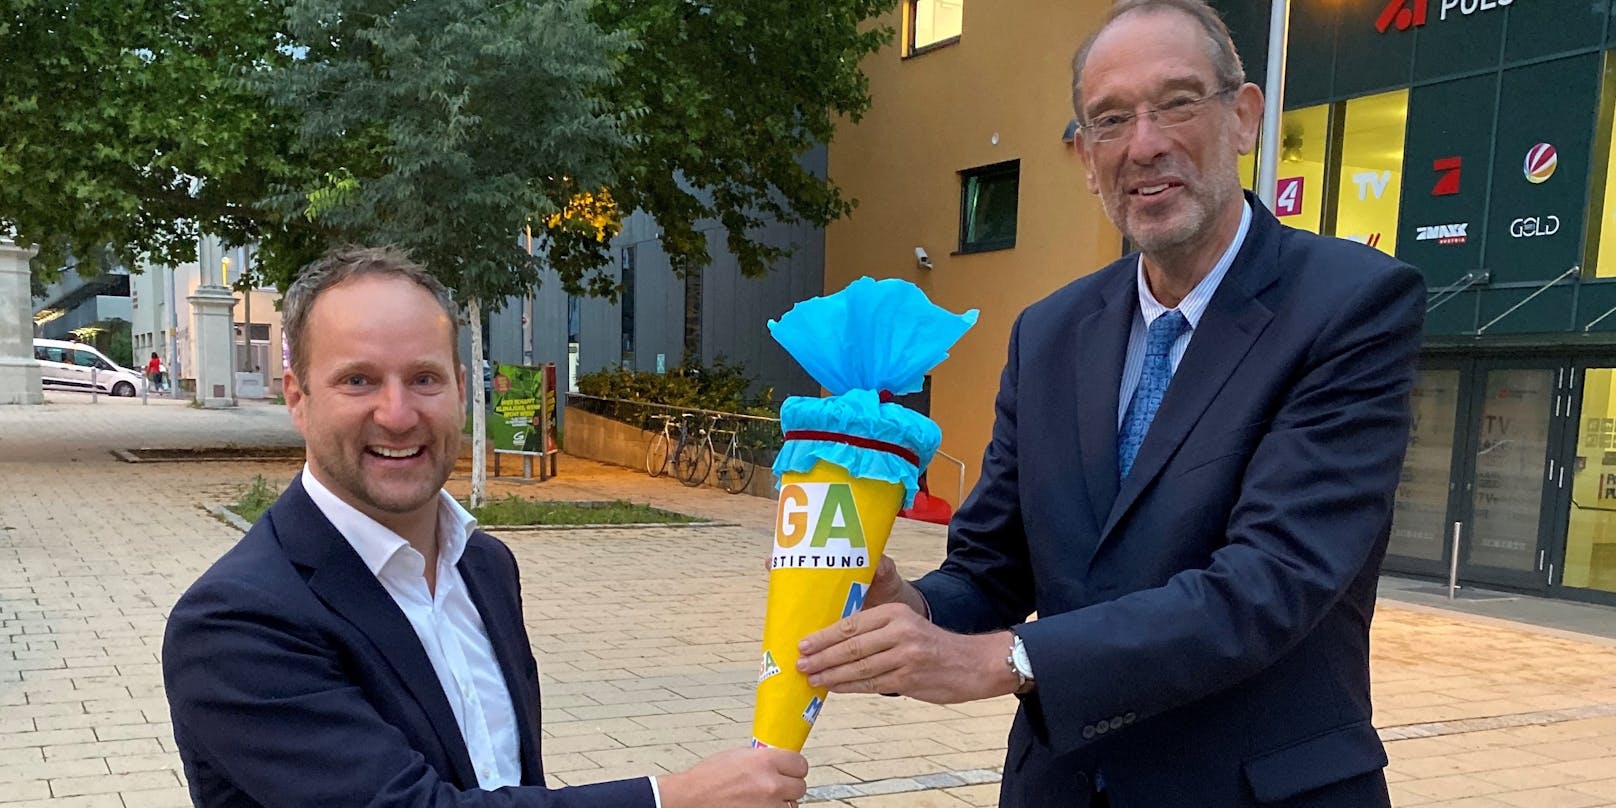 Minister Faßmann (2,03 Meter) und Matthias Strolz (1,72) bei der "Mega-Bildungsmillion" von Puls 4